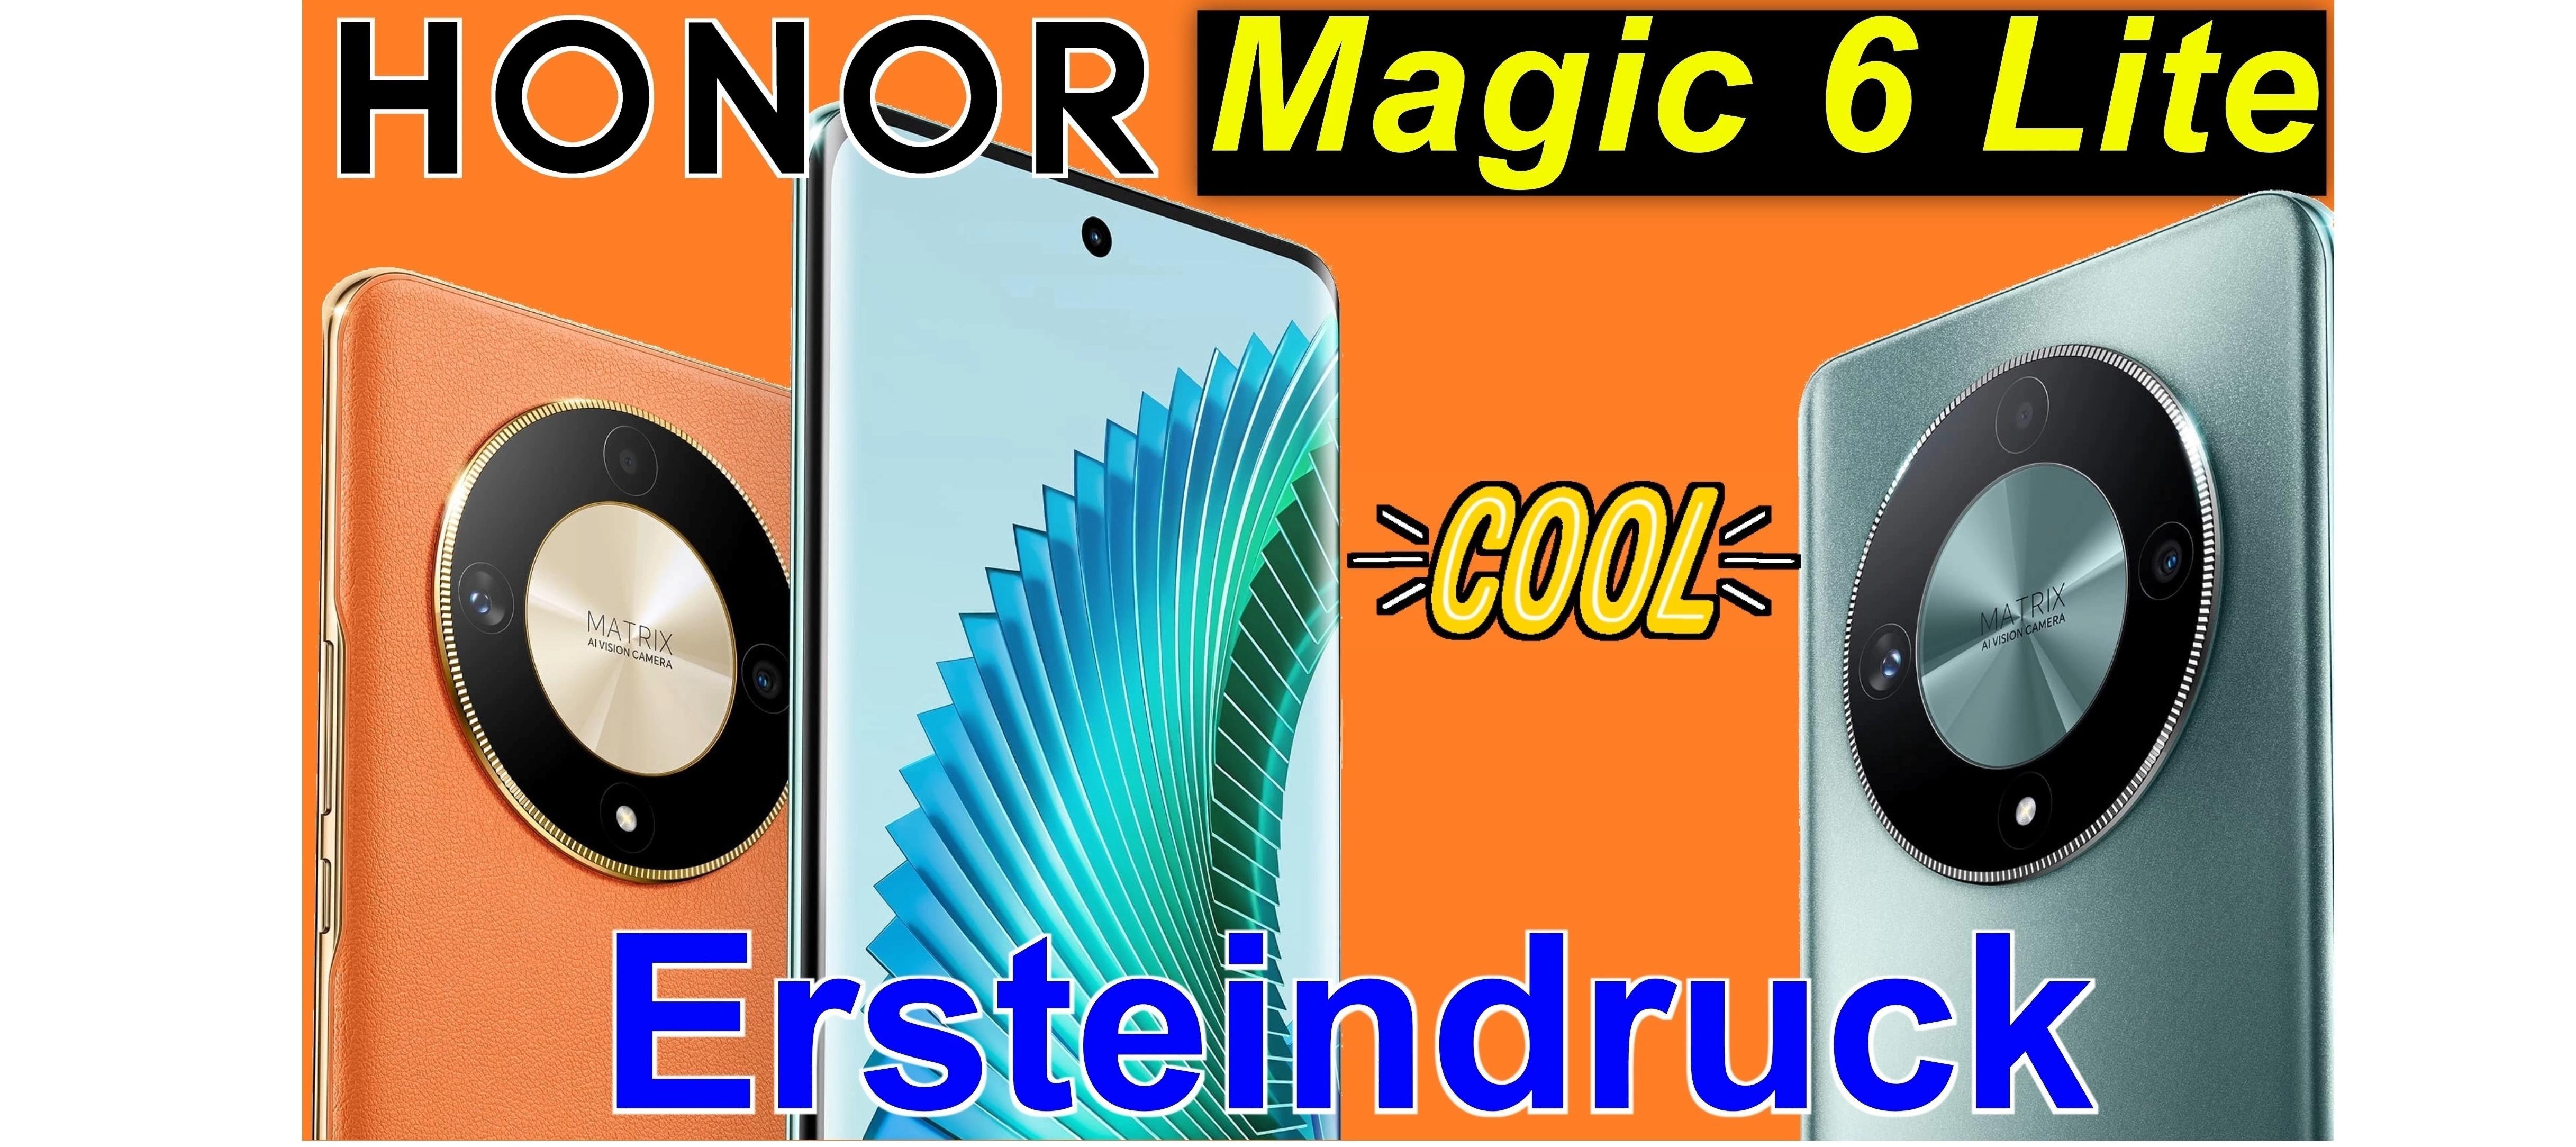 Honor Magic 6 Lite - auspacken und Ersteindruck | SeppelPower